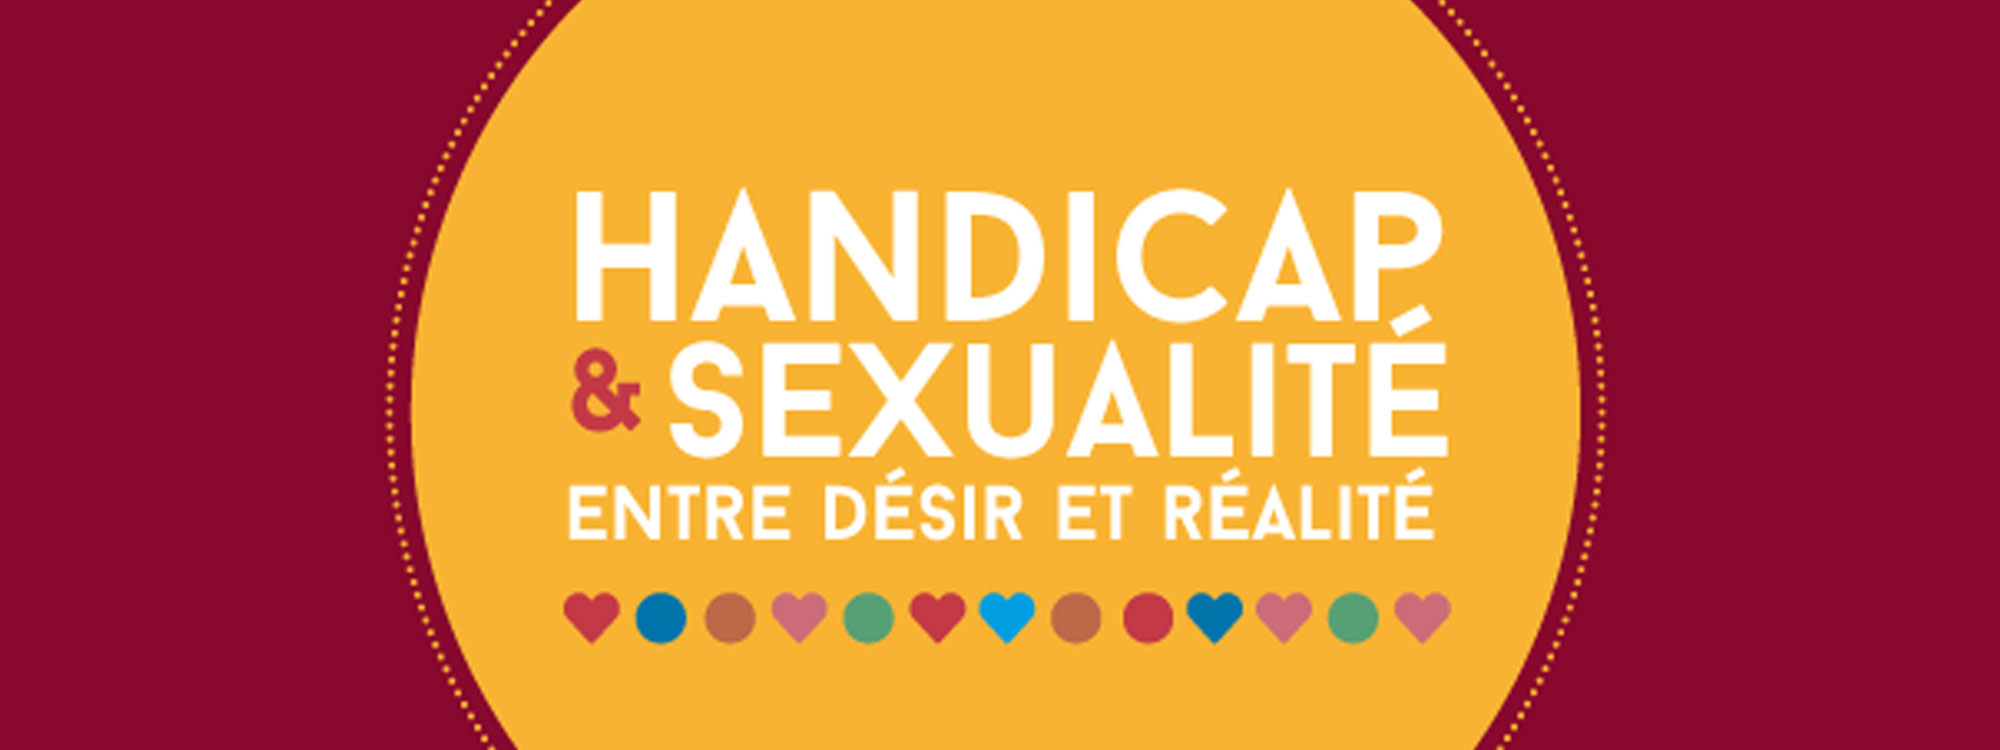 Handicap And Sexualité Entre Désir Et Réalité Associations Solidaris Liège